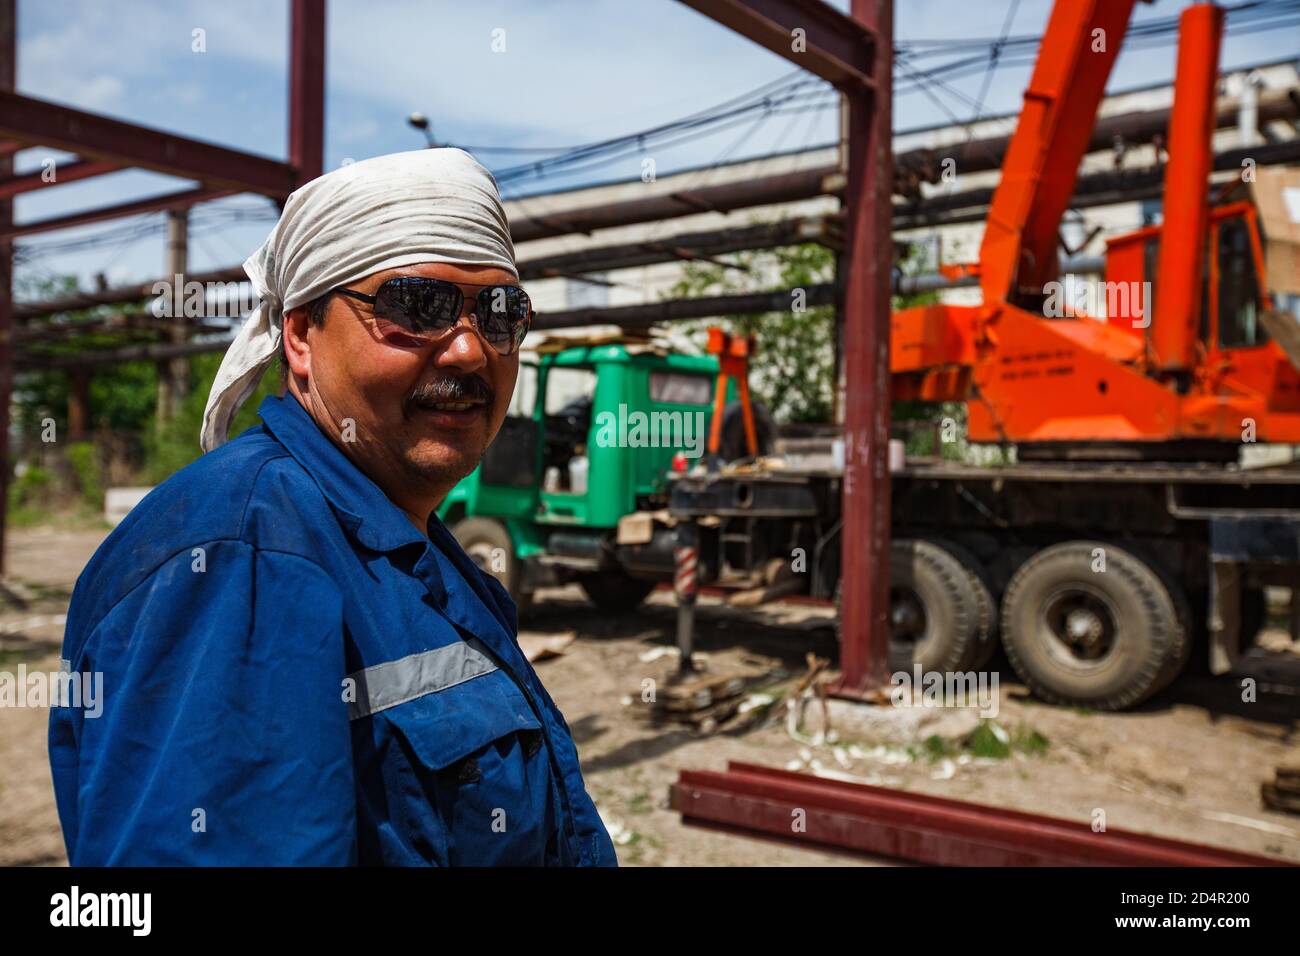 Shymkent/Kasachstan - April 27 2012: Porträt eines usbekischen Arbeiters in Sonnenbrille und weißem Stoffkopfdeckel. Orangefarbener und grüner Mobilkran auf dem Hintergrund. Stockfoto